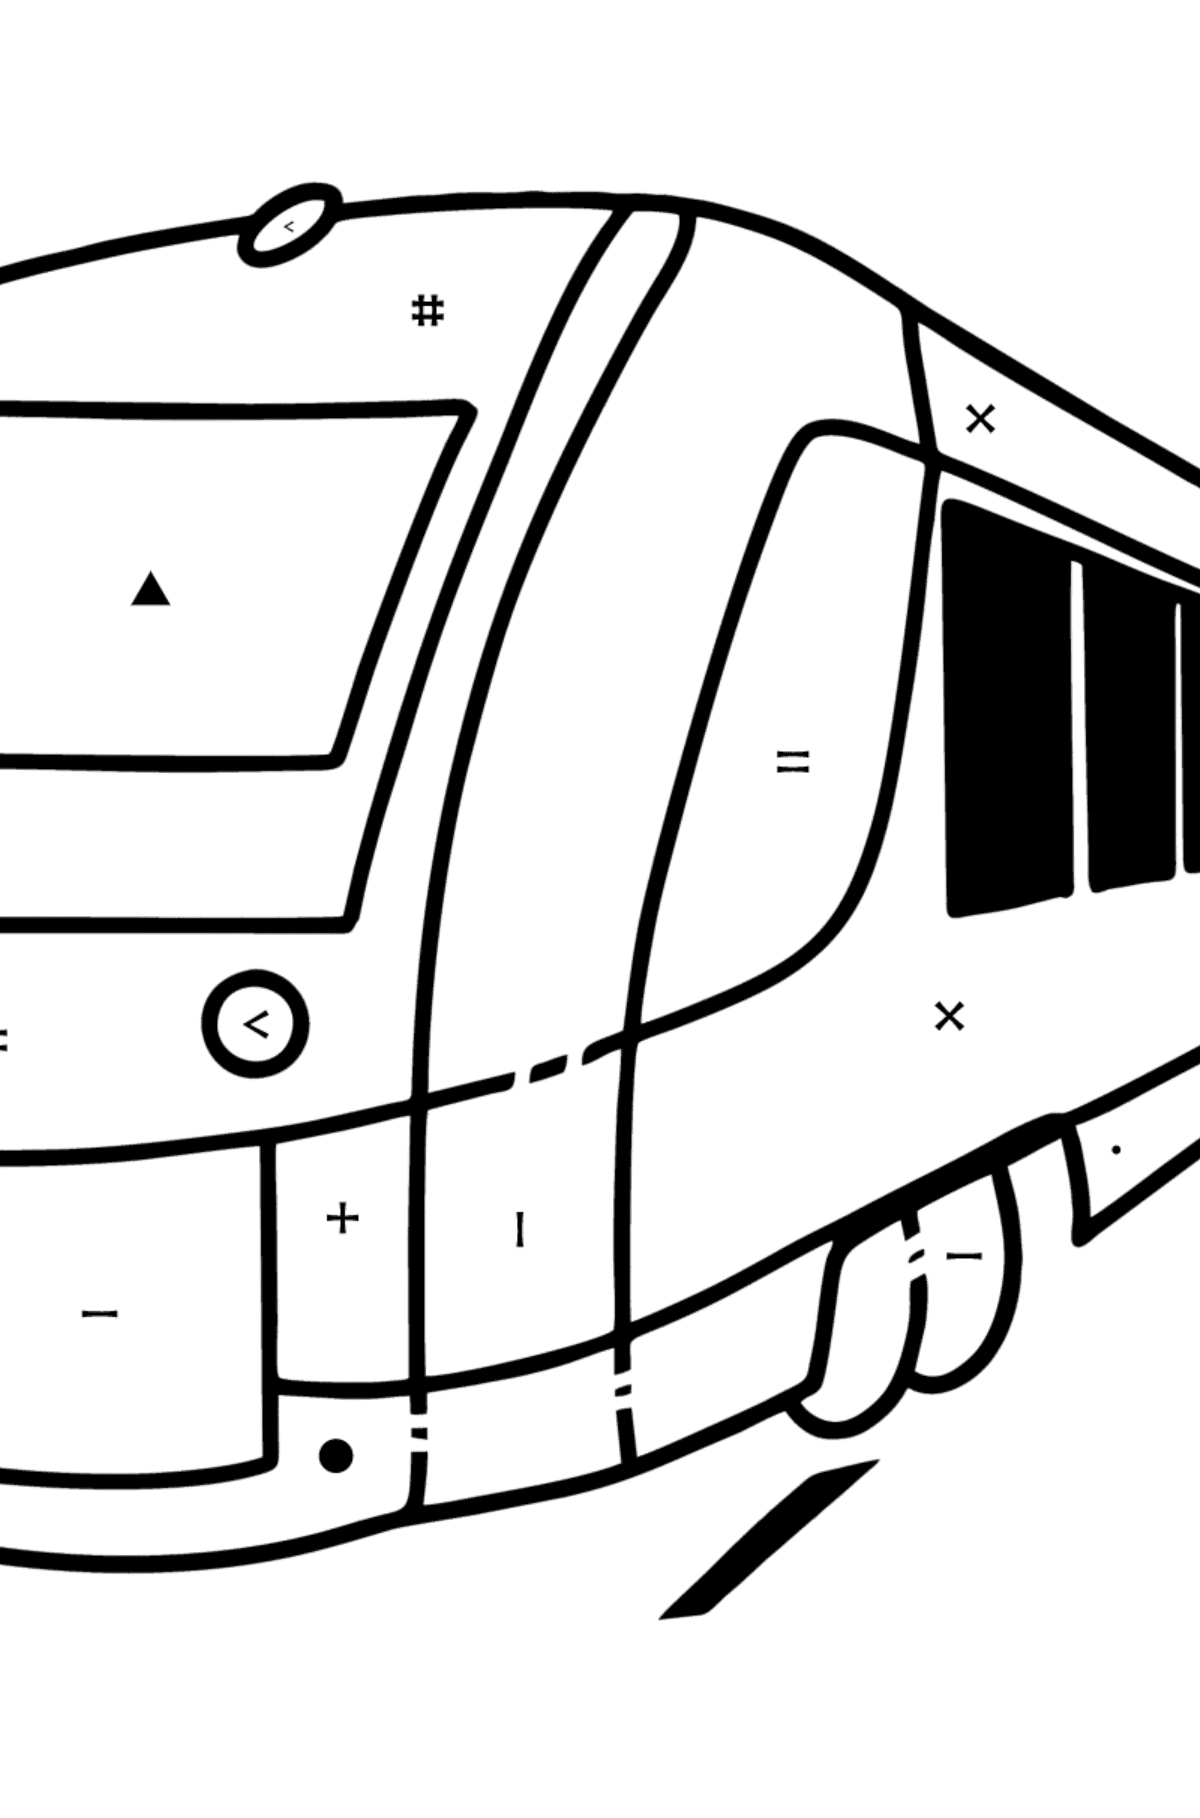 Tegning til fargelegging elektrisk tog - Fargelegge etter symboler for barn